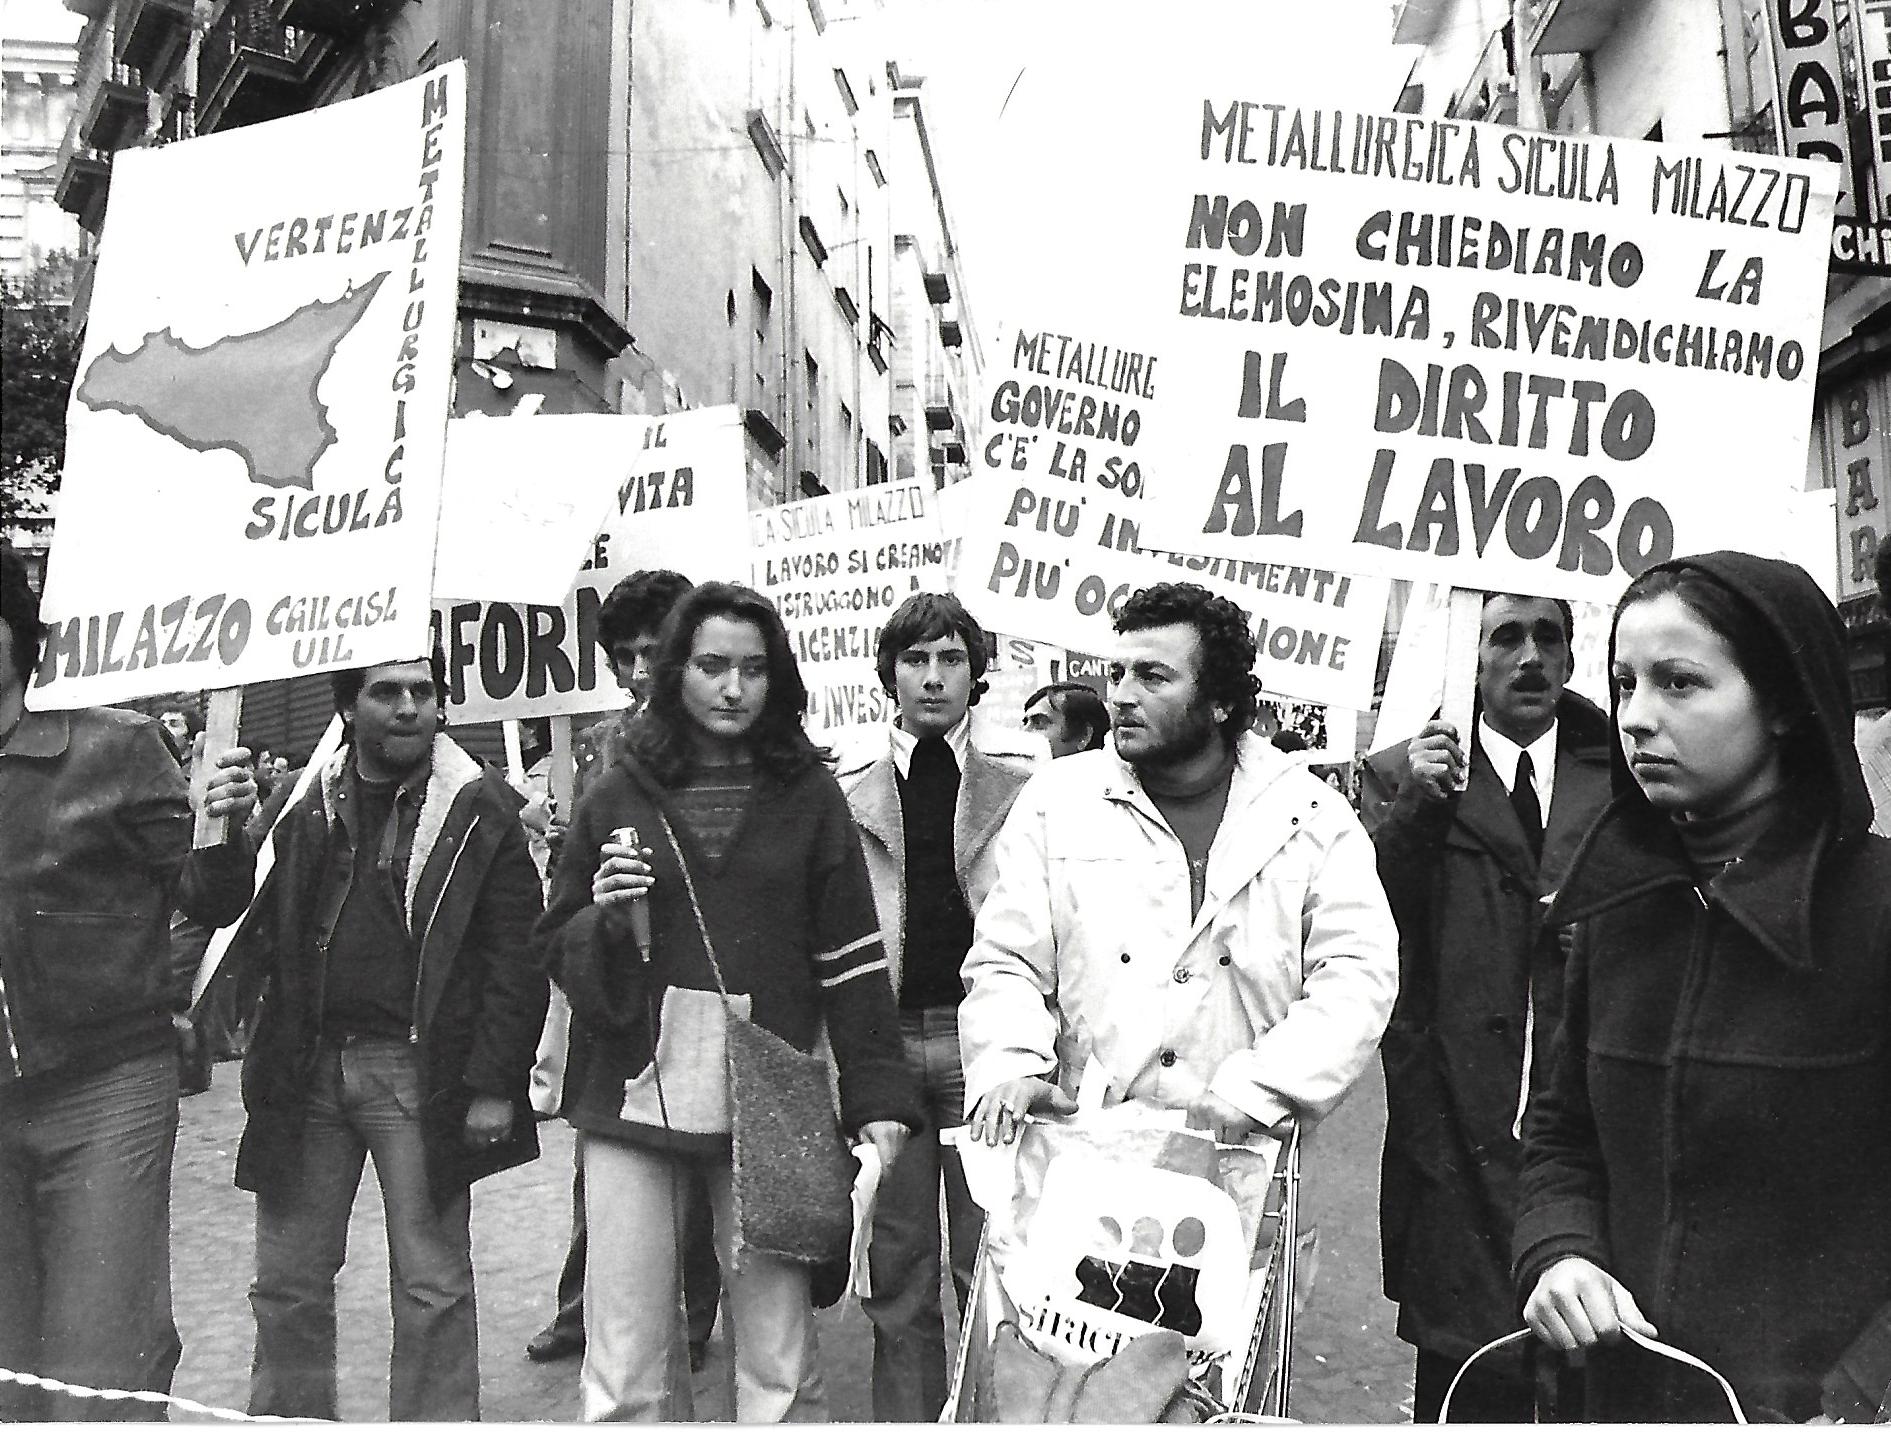 12 dicembre:1975 Napoli - sciopero nazionale dei metalmeccanici, con manifestazione nazionale a Napoli, per loccupazione e il rinnovo contrattuale. Commentando lo sciopero, la Flm sottolinea che si  entrati in una ''fase nuova nella politica del grande padronato, caratterizzata dallattacco aperto alloccupazione''.  Allo sciopero ha aderito anche il sindacato dei chimici Fulc.